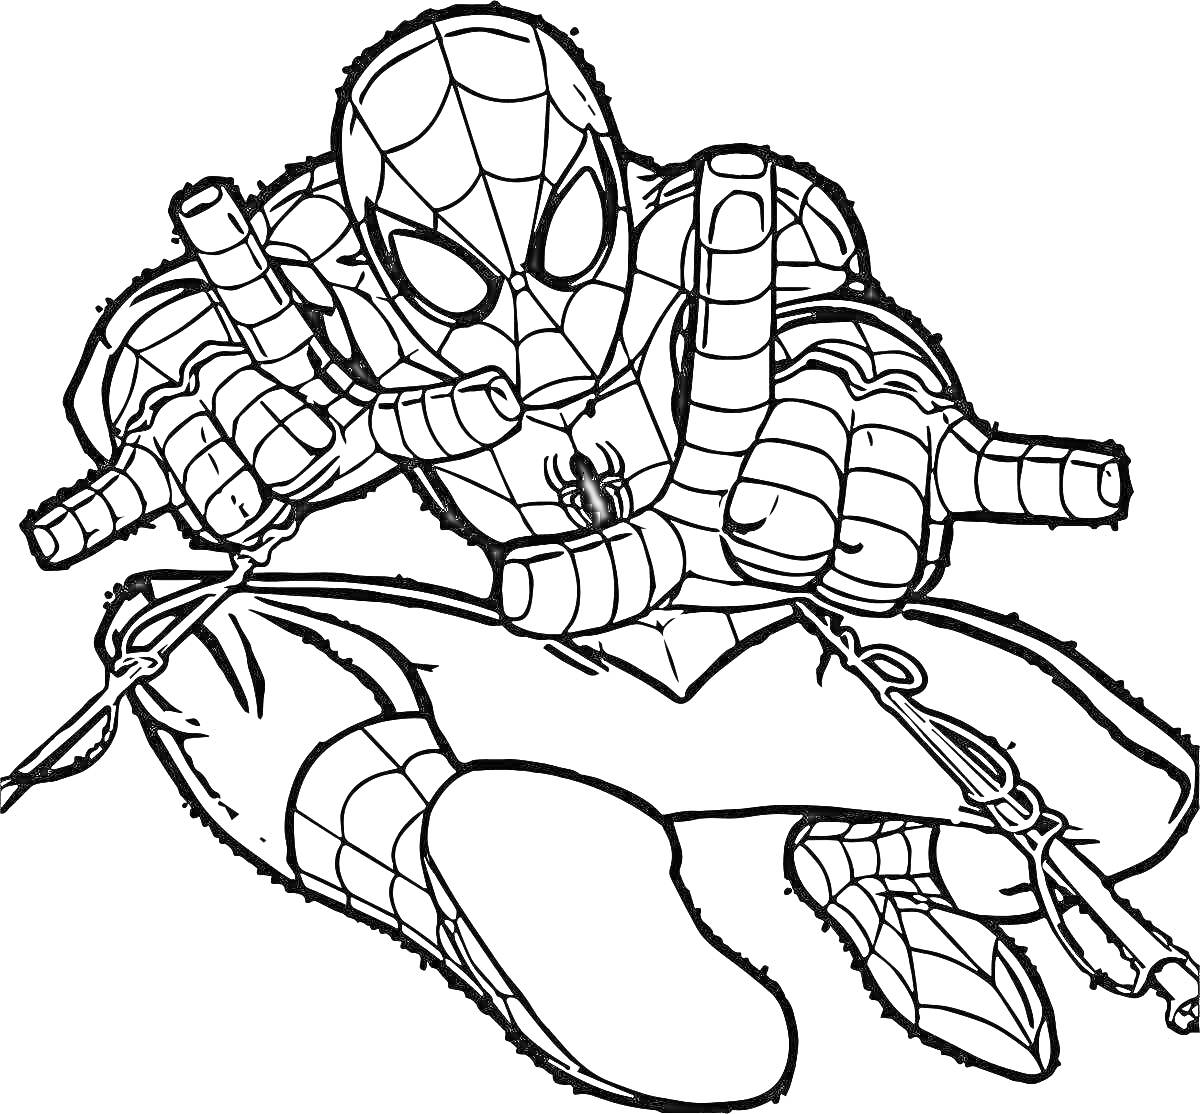 Раскраска Человек-паук выпускает паутину, в динамичной позе с согнутыми ногами, маска с глазками, костюм с паутинным рисунком, символ паука на груди.